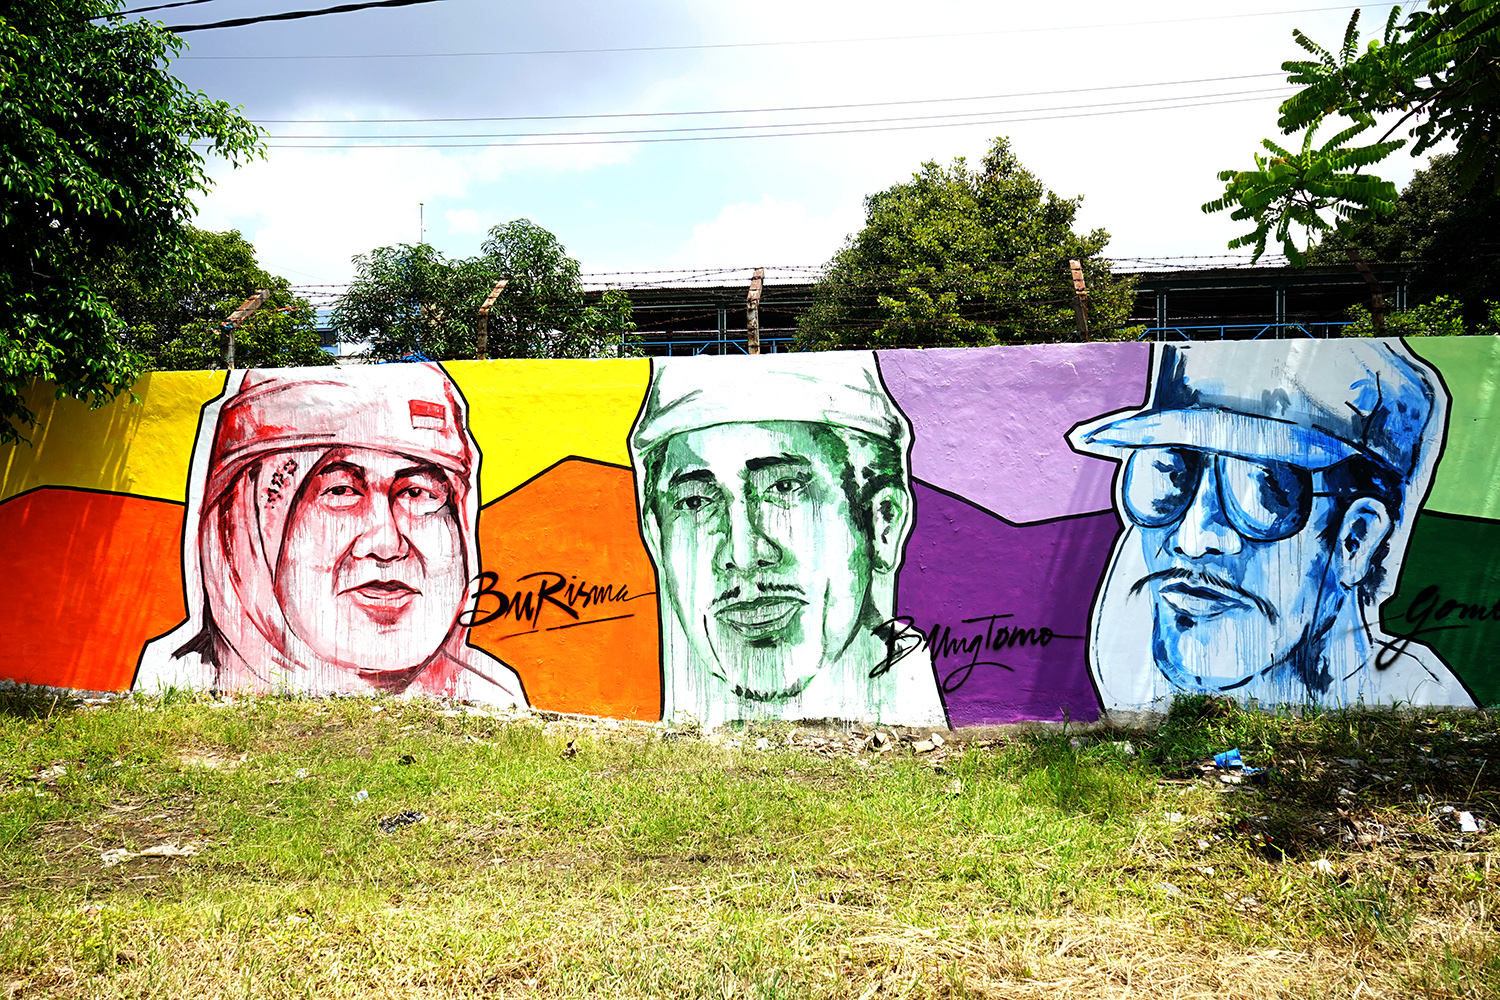  Pemerintah Kota (Pemkot) Surabaya mencoba mempercantik stren kali yang berada di kawasan jagir wonokromo melalui sentuhan mural. (Foto: frd/ngopibareng.id)